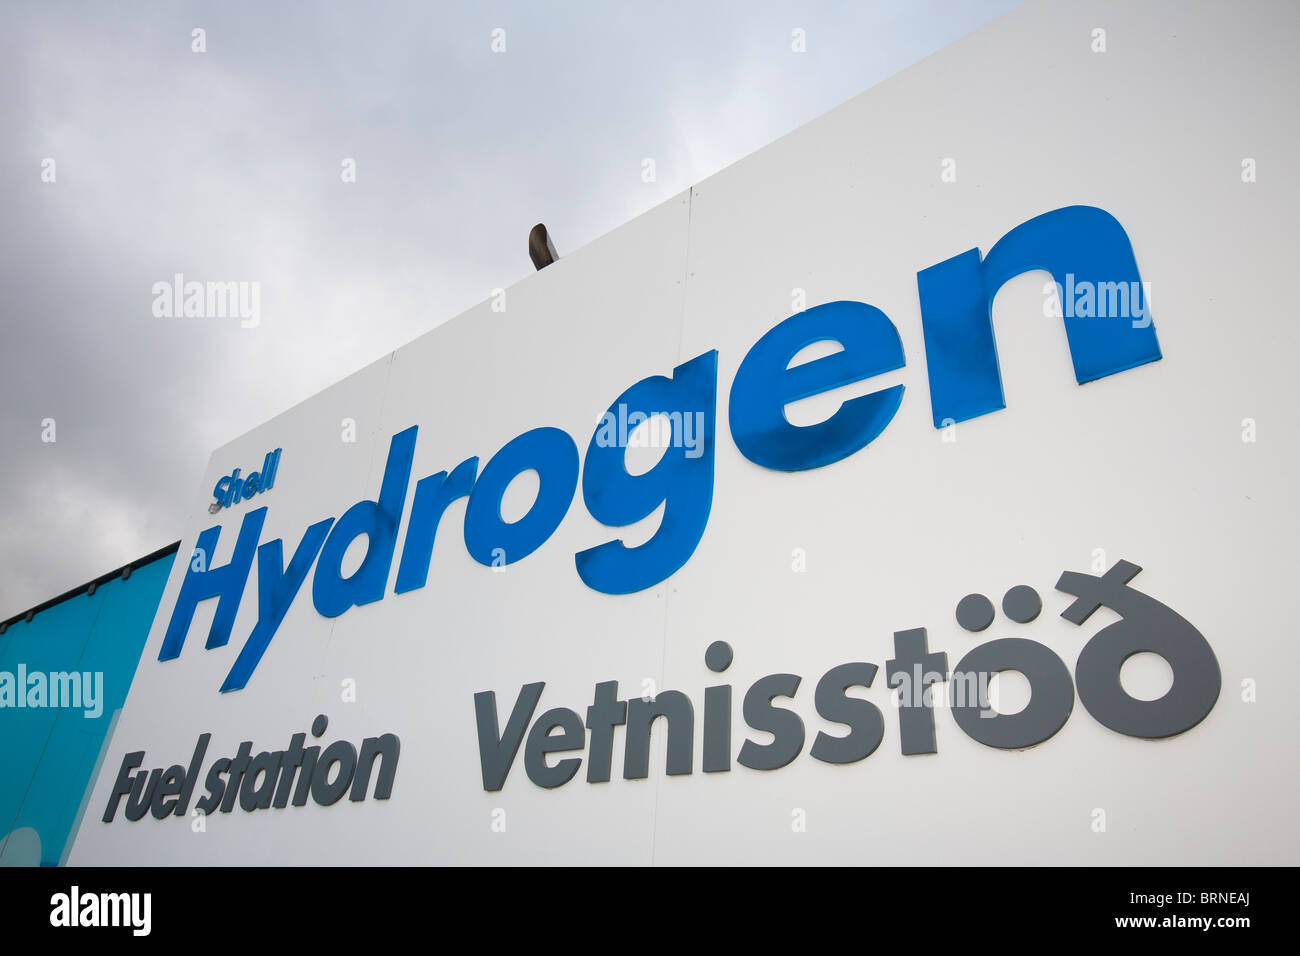 Un idrogeno stazione di riempimento nella periferia di Reykavik, Islanda. Foto Stock